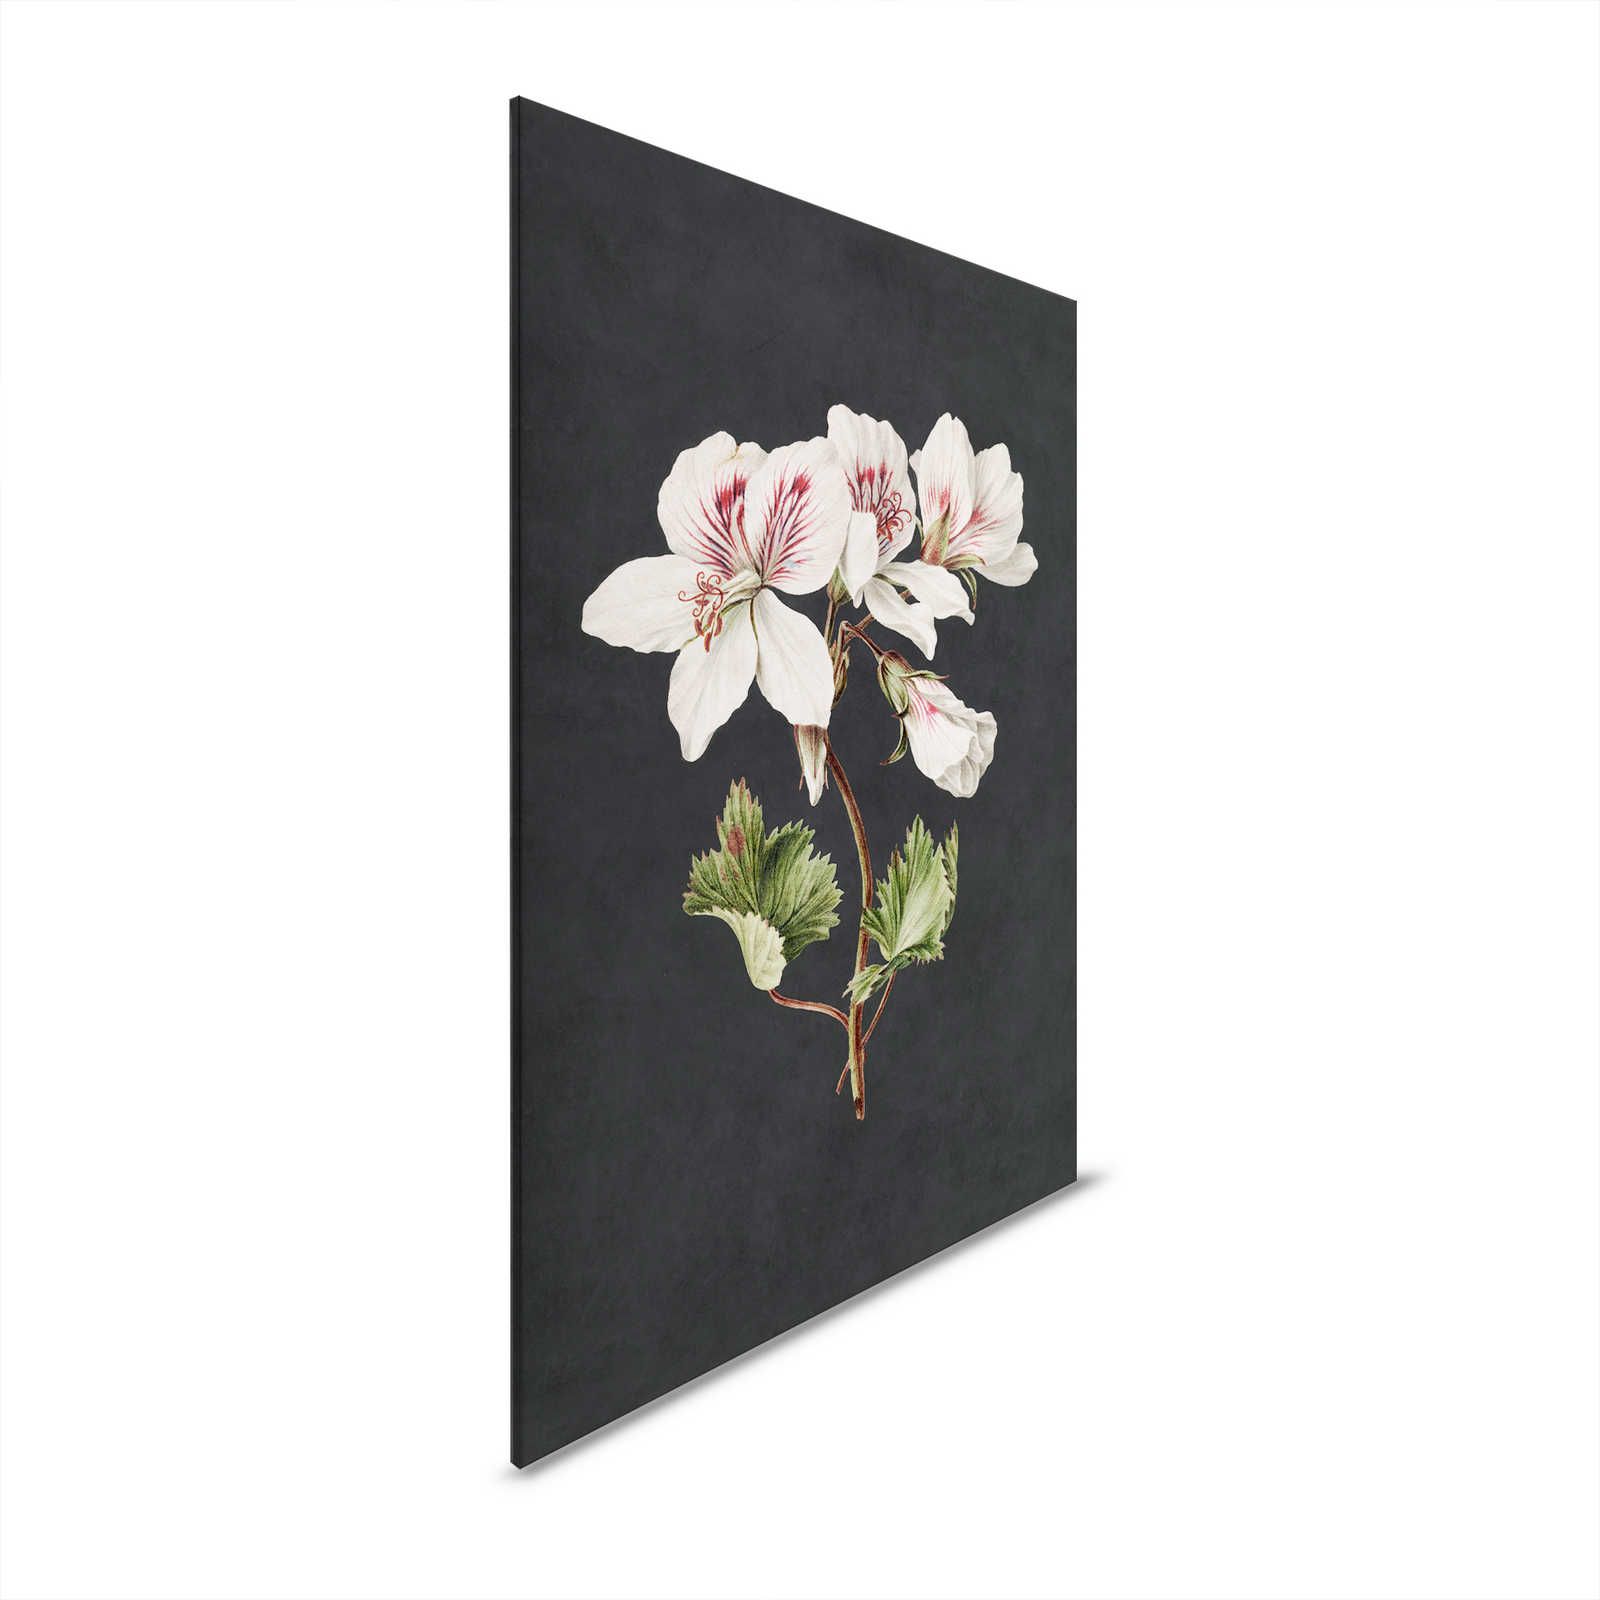 Giardino di mezzanotte 1 - Quadro su tela nera Stile pittura giglio in fiore - 0,80 m x 1,20 m
